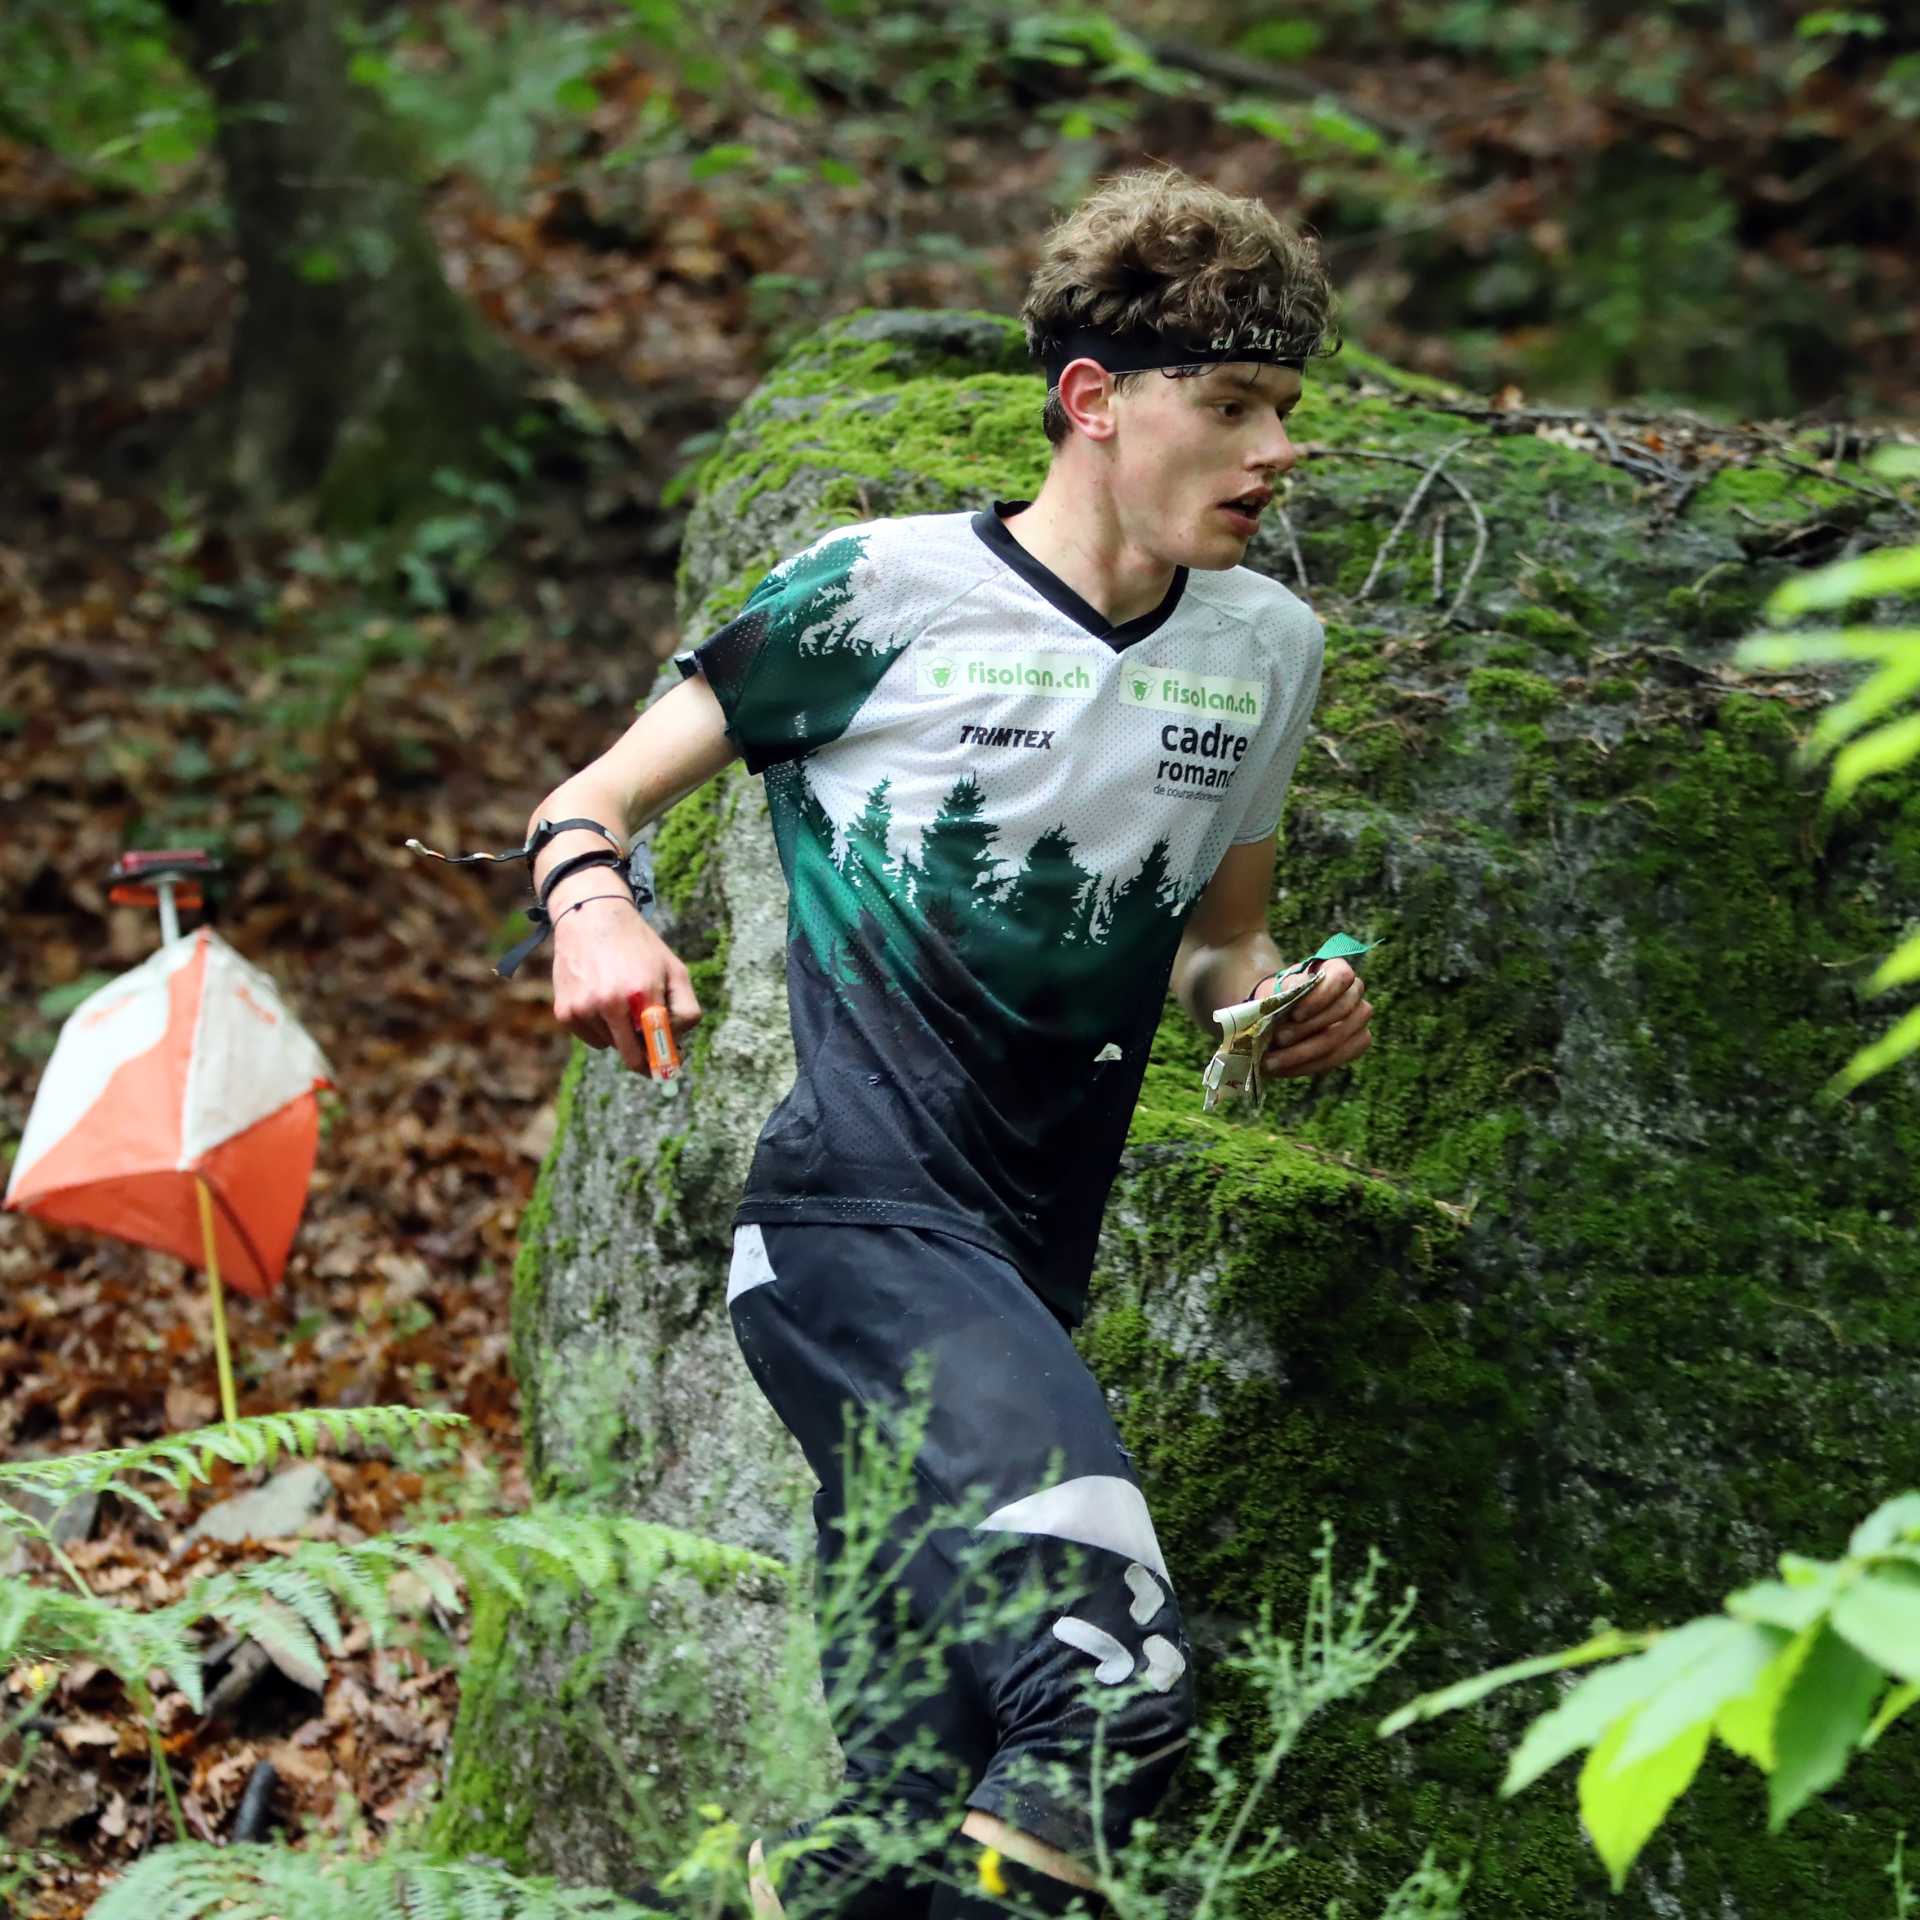 Matthieu Bührer in Sportkleidung im Wald am rennen neben einem OL-Posten